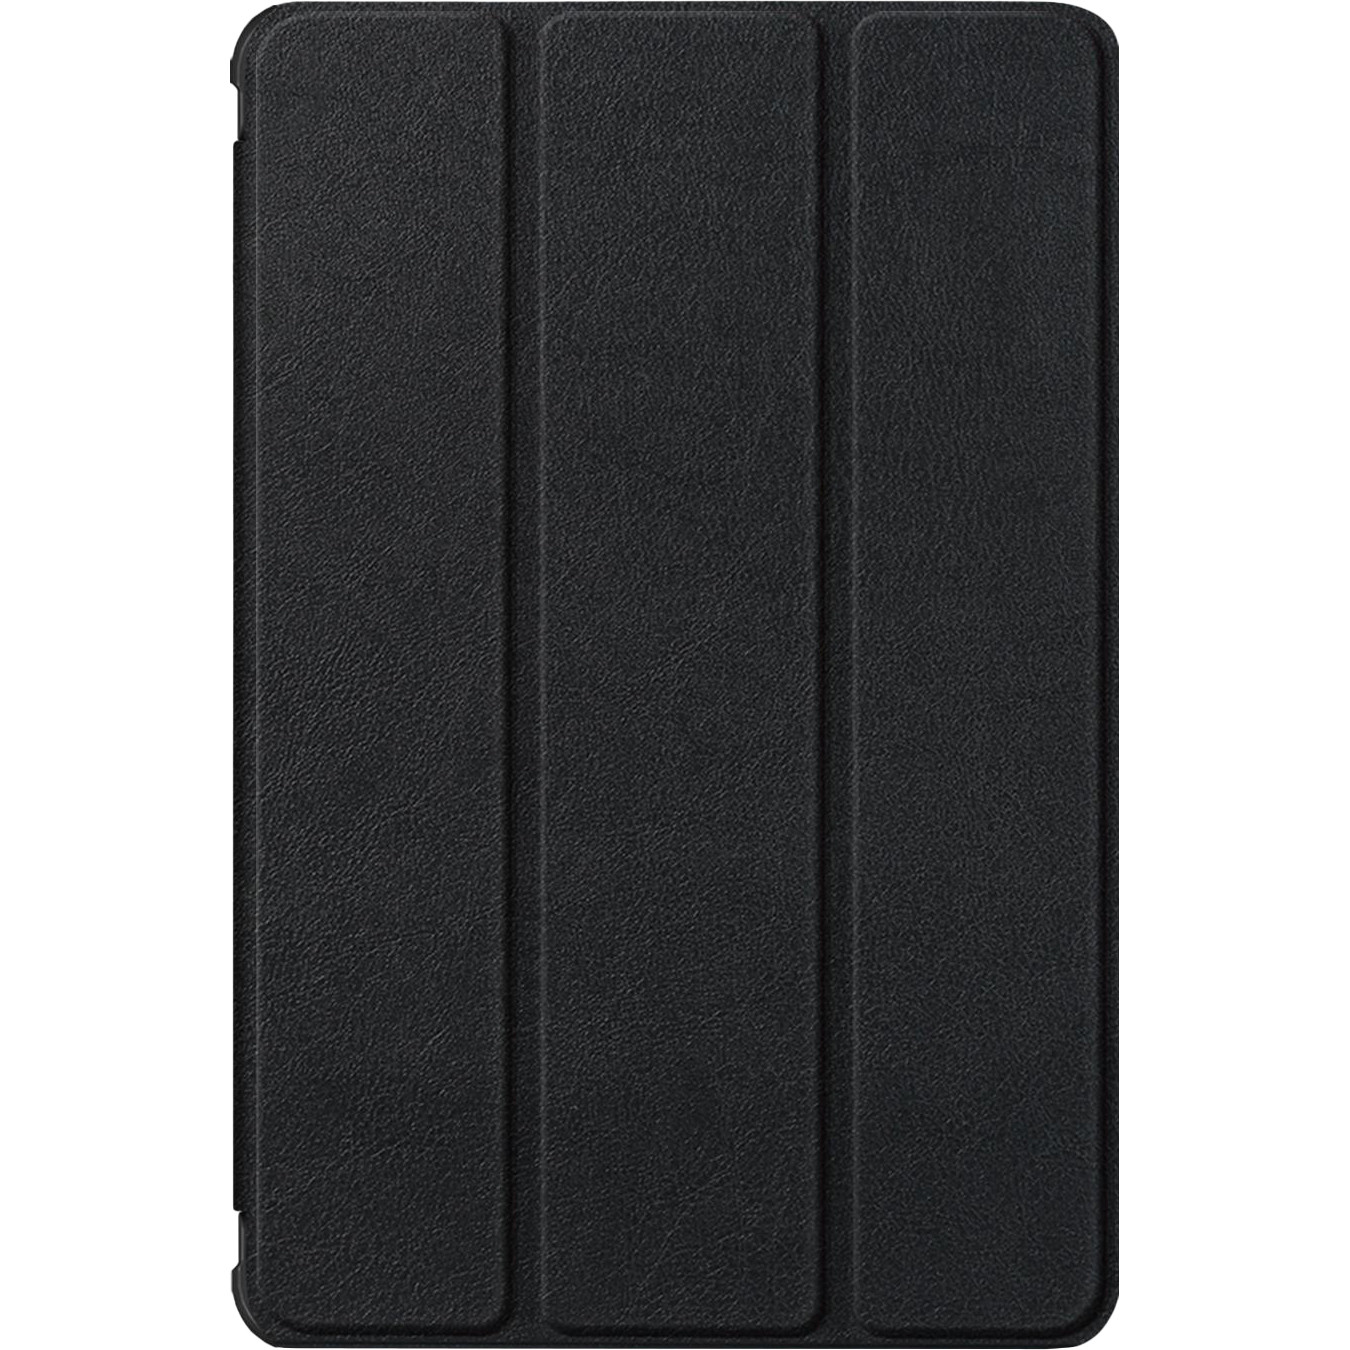 BeCover Smart Case для Samsung Galaxy Tab A7 10.4 2020 SM-T500 / SM-T505 / SM-T507 Black (705285) - зображення 1